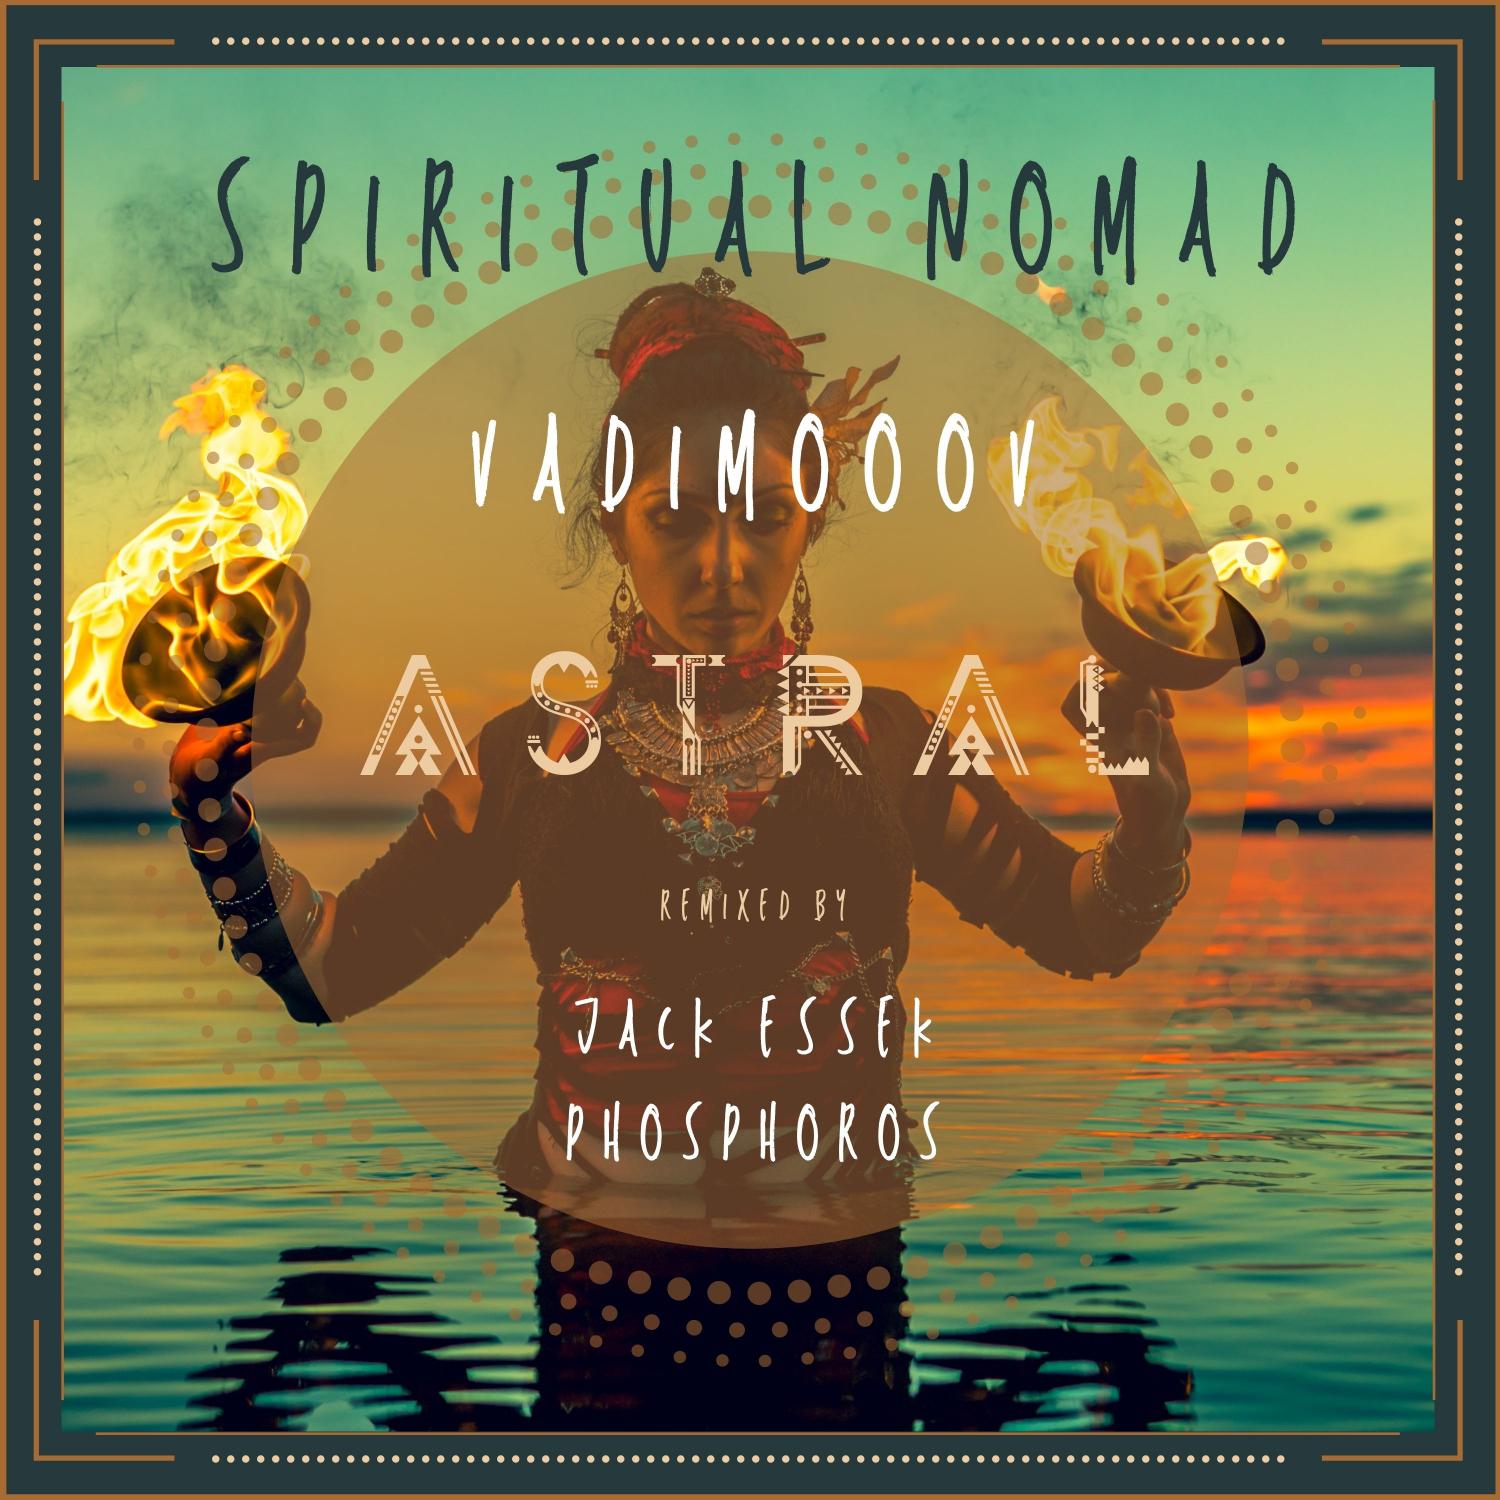 VadimoooV - Astral (Original Mix)